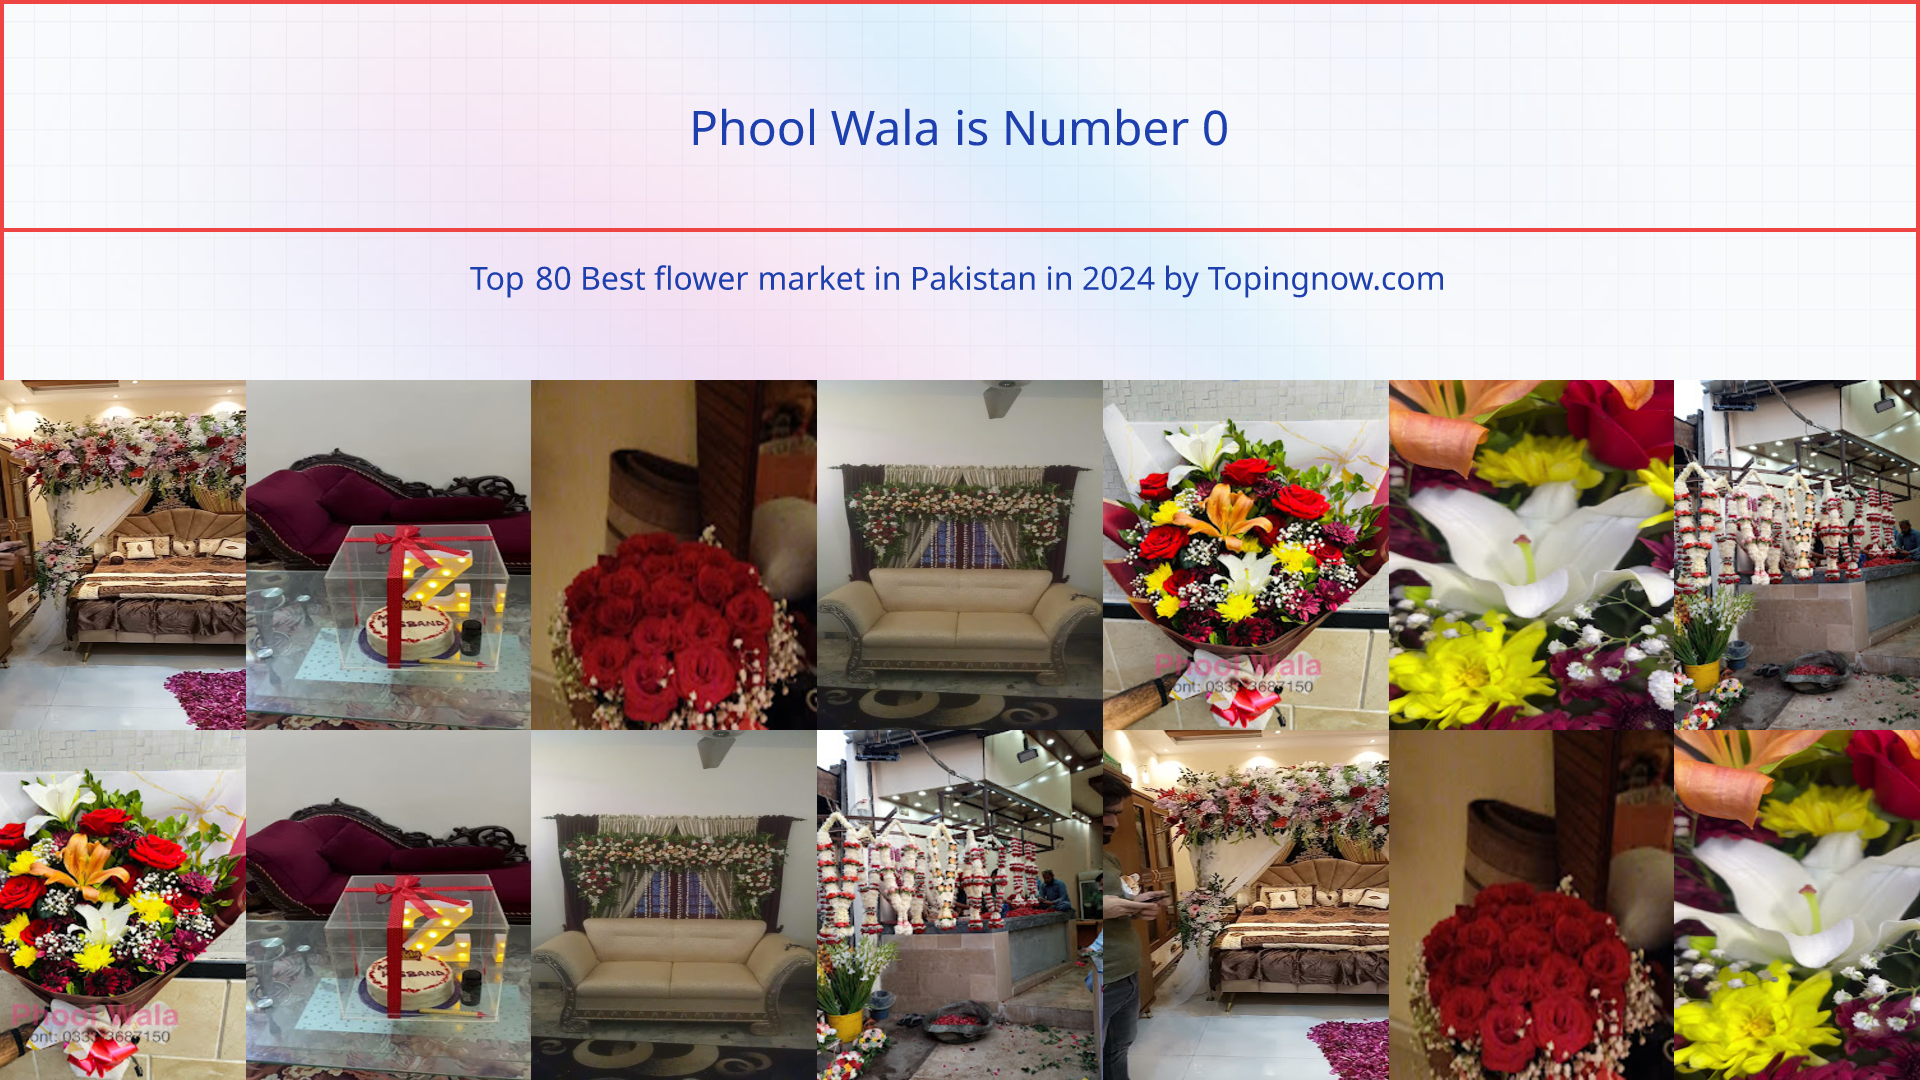 Phool Wala: Top 80 Best flower market in Pakistan in 2024